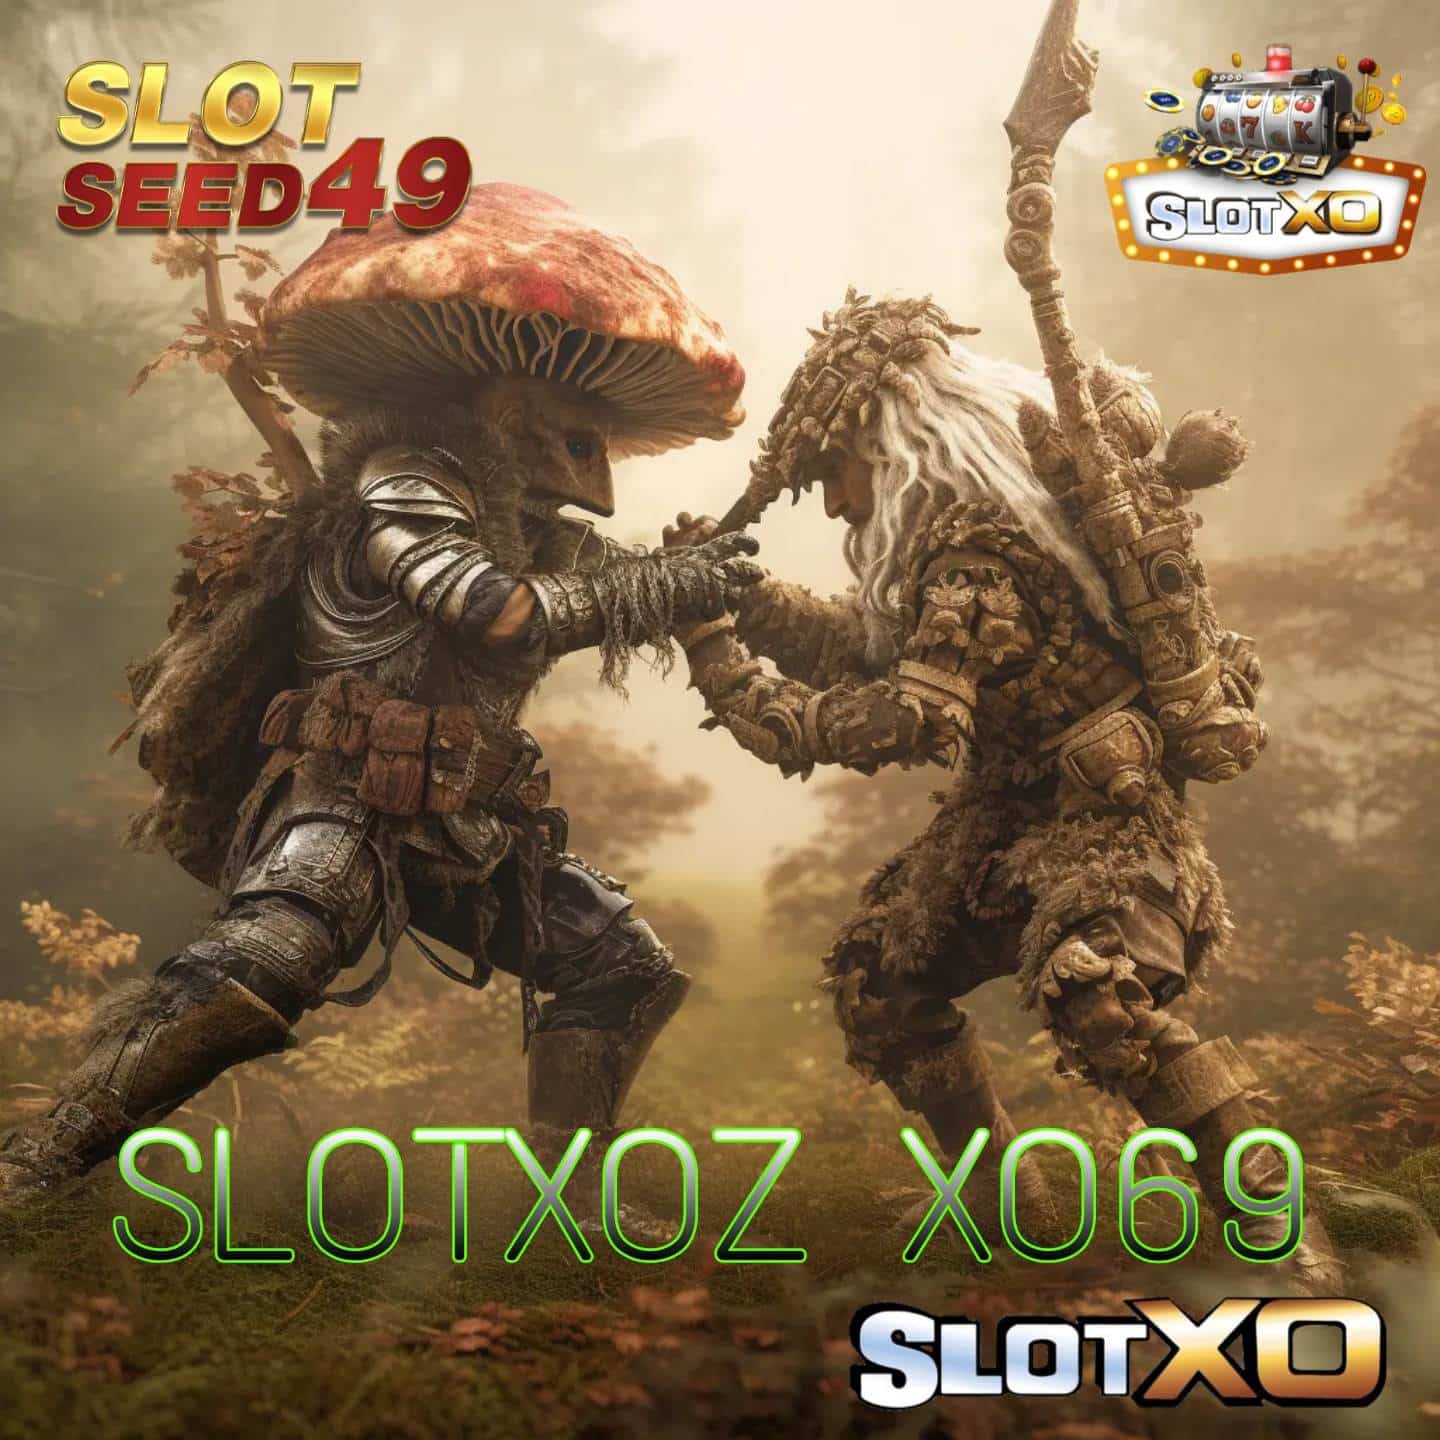 SLOTXOZ XO69